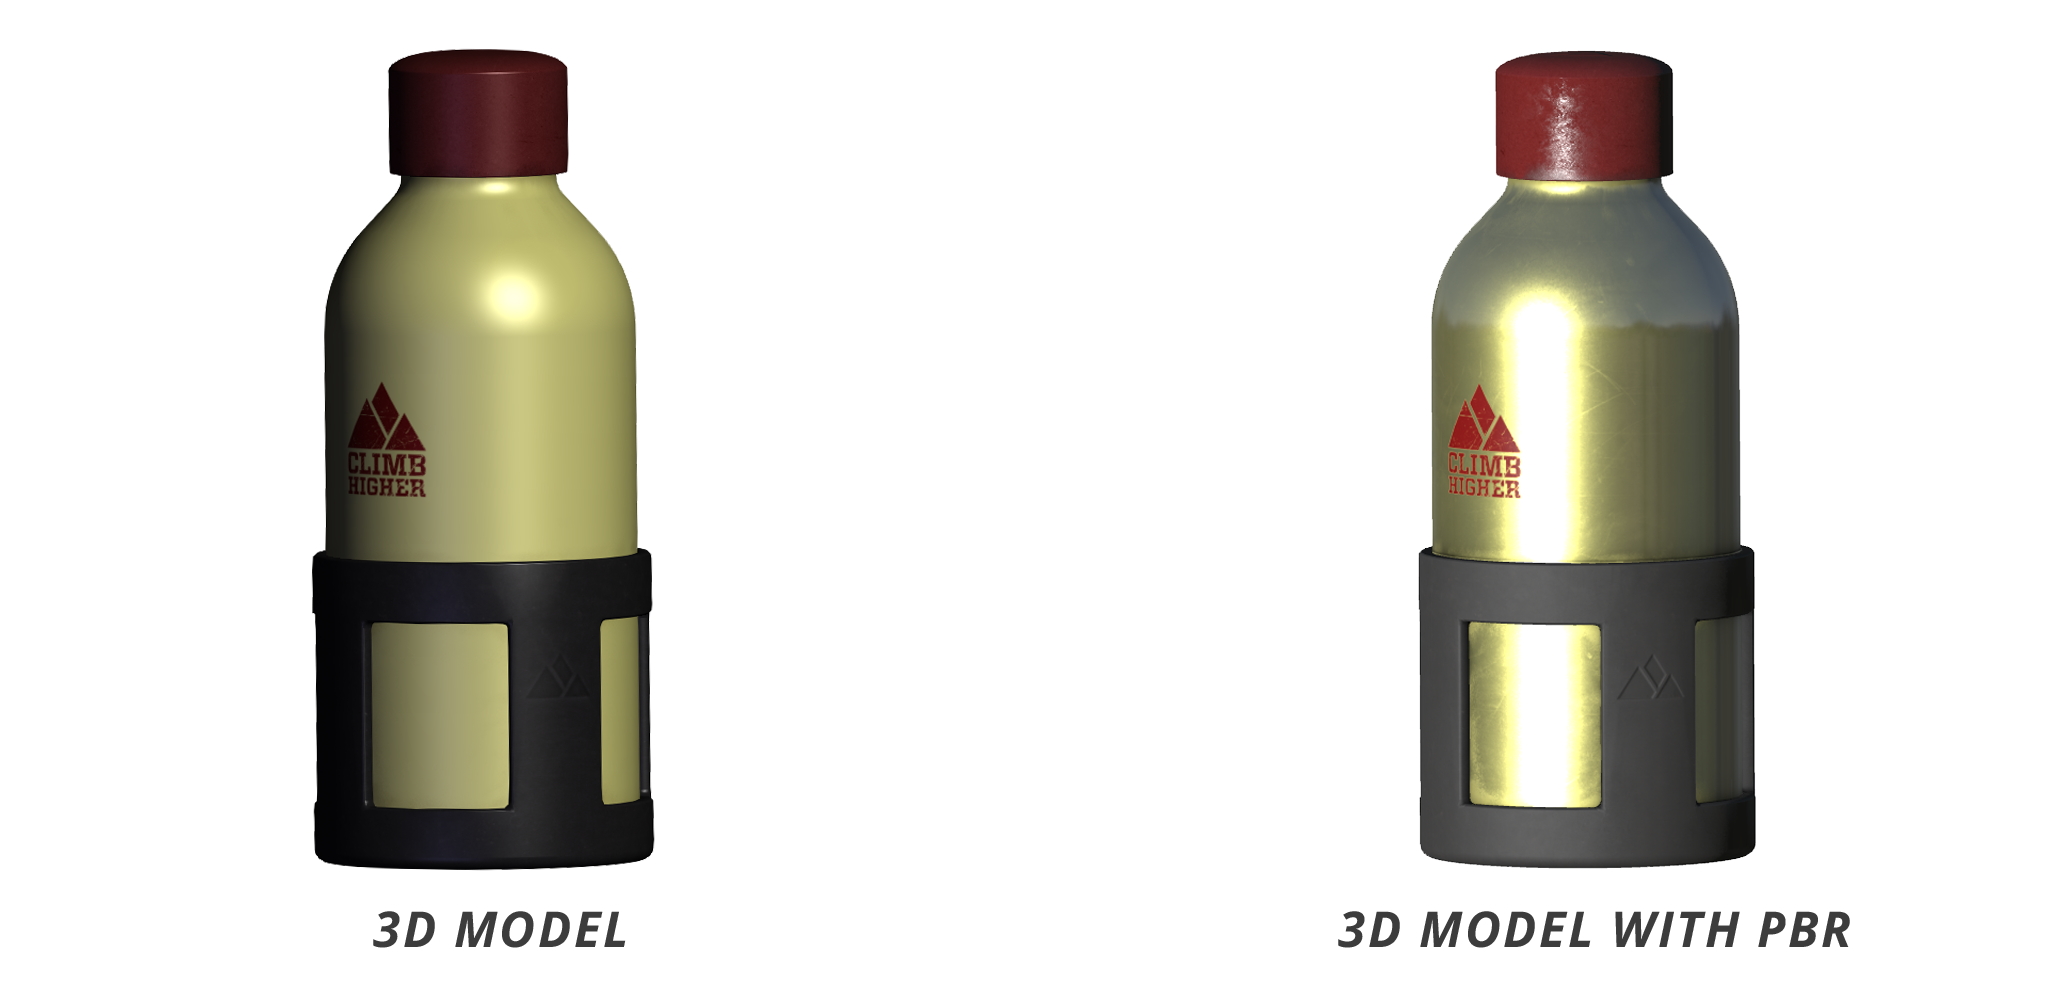 3D Model PBR Comparison